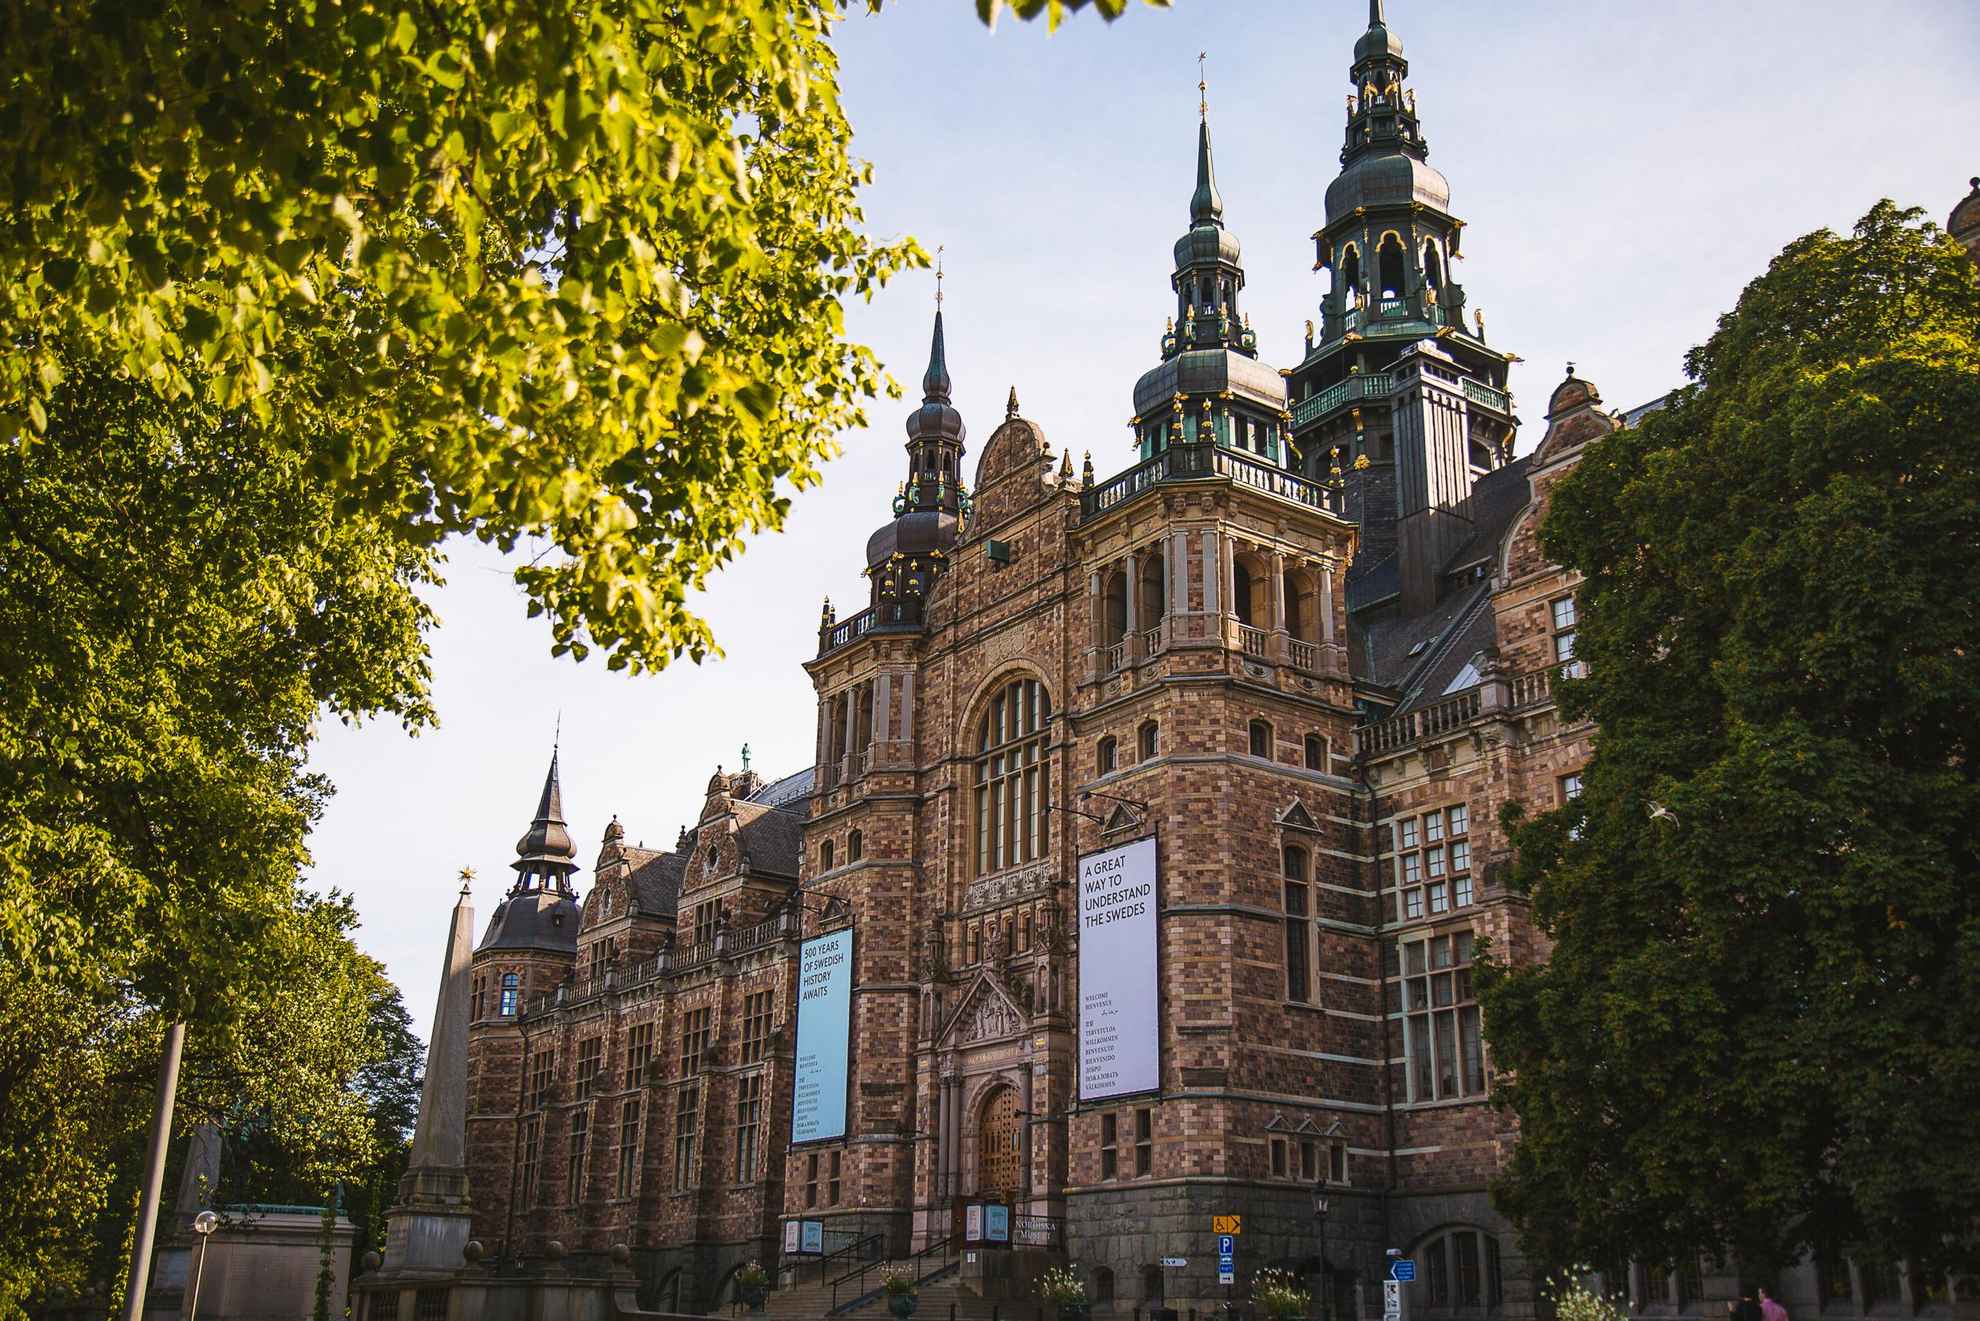 Außensicht des Nordischen Museums im neoklassischen Stil über mehrere Etagen und mit zahlreichen Türmen.